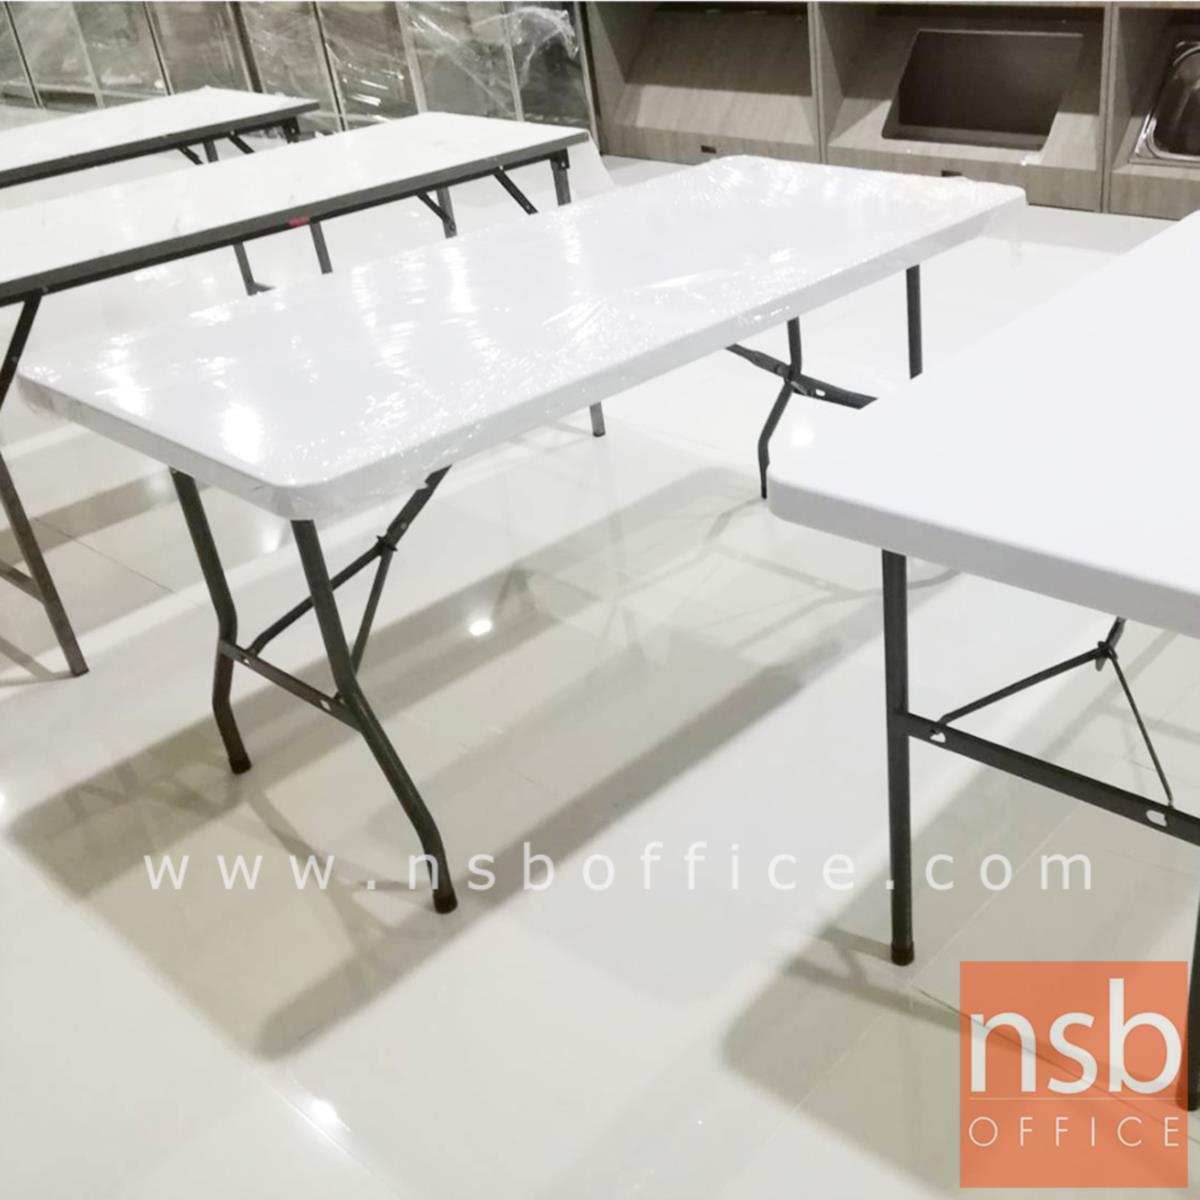 โต๊ะพับหน้าพลาสติก รุ่น Newland (นิวแลนด์) ขนาด 152W ,182W cm.  โครงเหล็ก